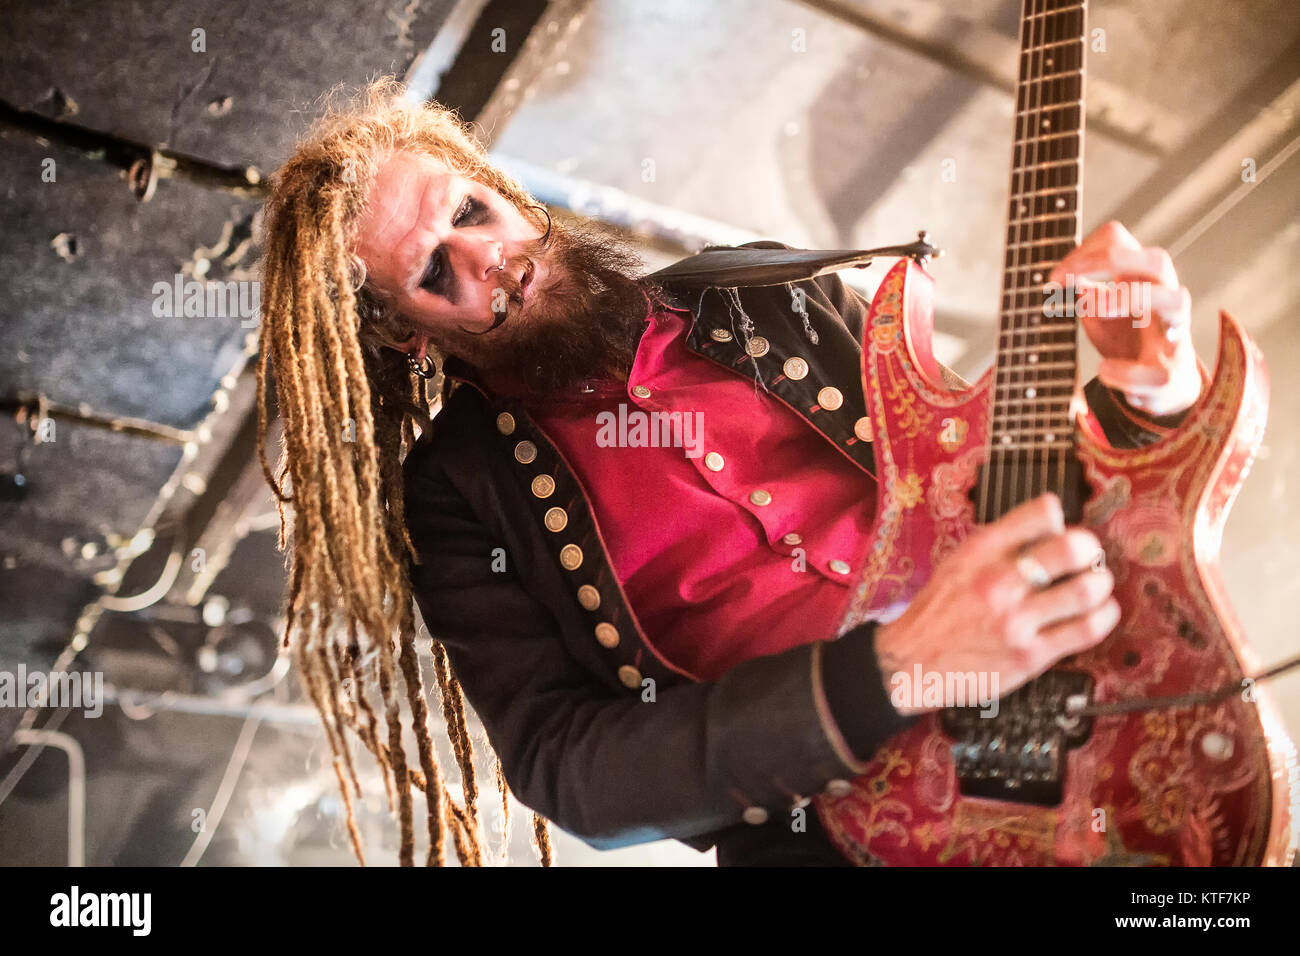 Le groupe de heavy metal suédois Avatar effectue un concert live à John Dee dans Oslo. Ici le guitariste Jonas 'Kungen" Jarlsby est vu sur scène. La Norvège, 14/12 2016. Banque D'Images